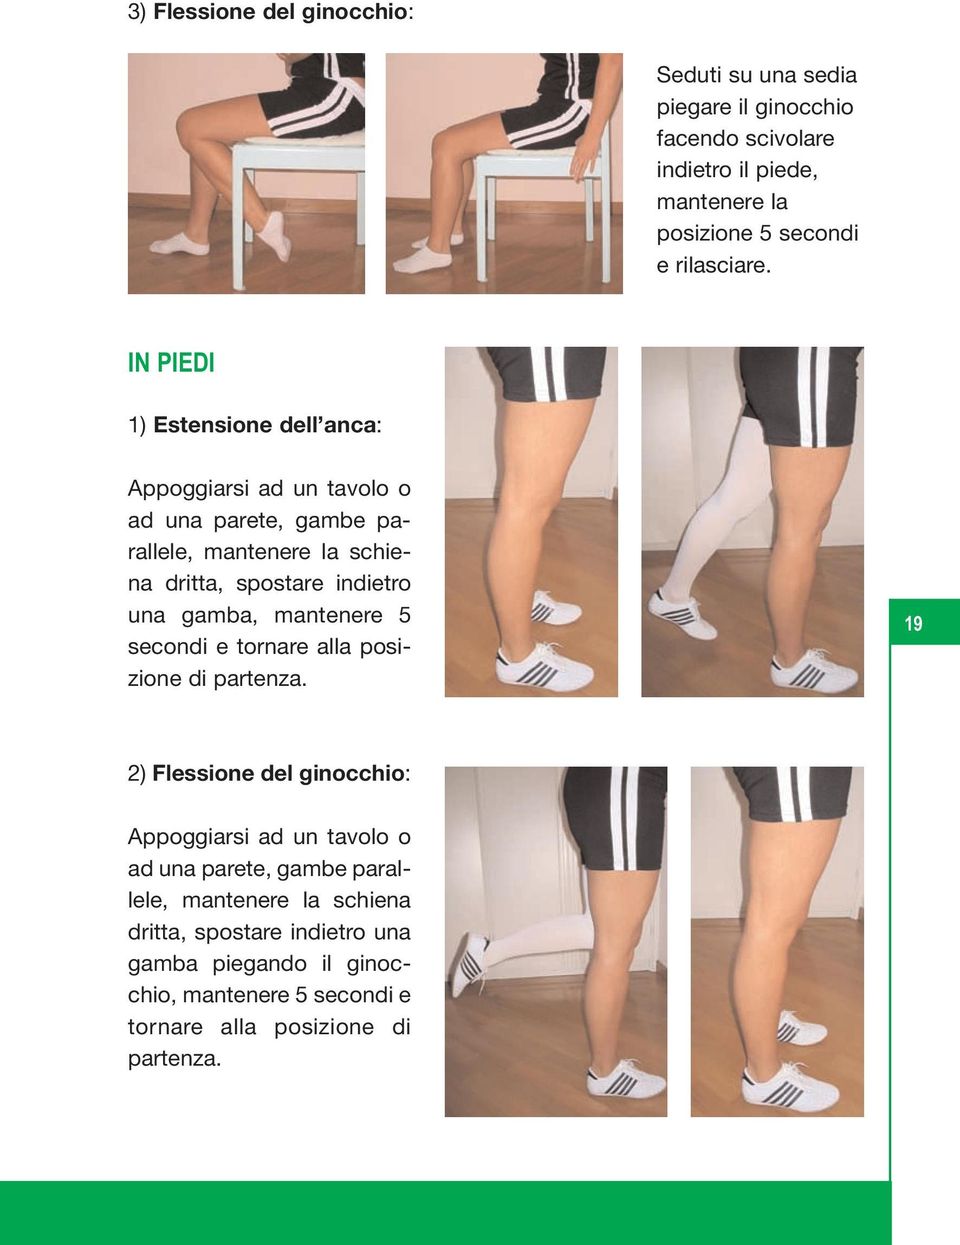 IN PIEDI 1) Estensione dell anca: Appoggiarsi ad un tavolo o ad una parete, gambe parallele, mantenere la schiena dritta, spostare indietro una